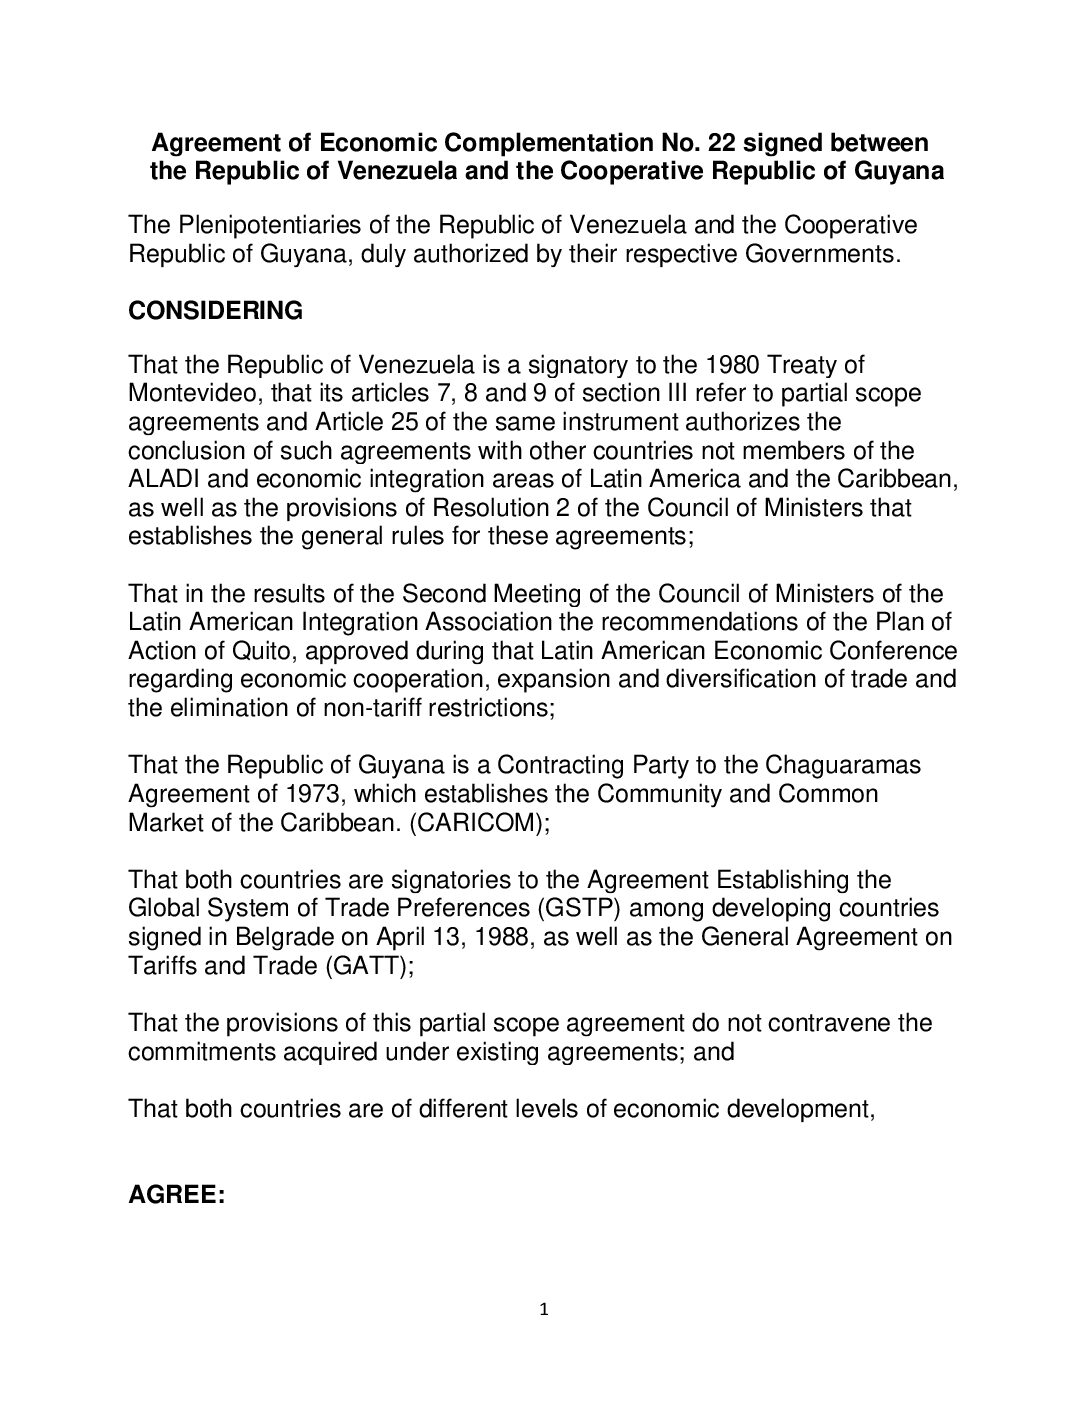 Guyana-Venezuela Partial Scope Agreement